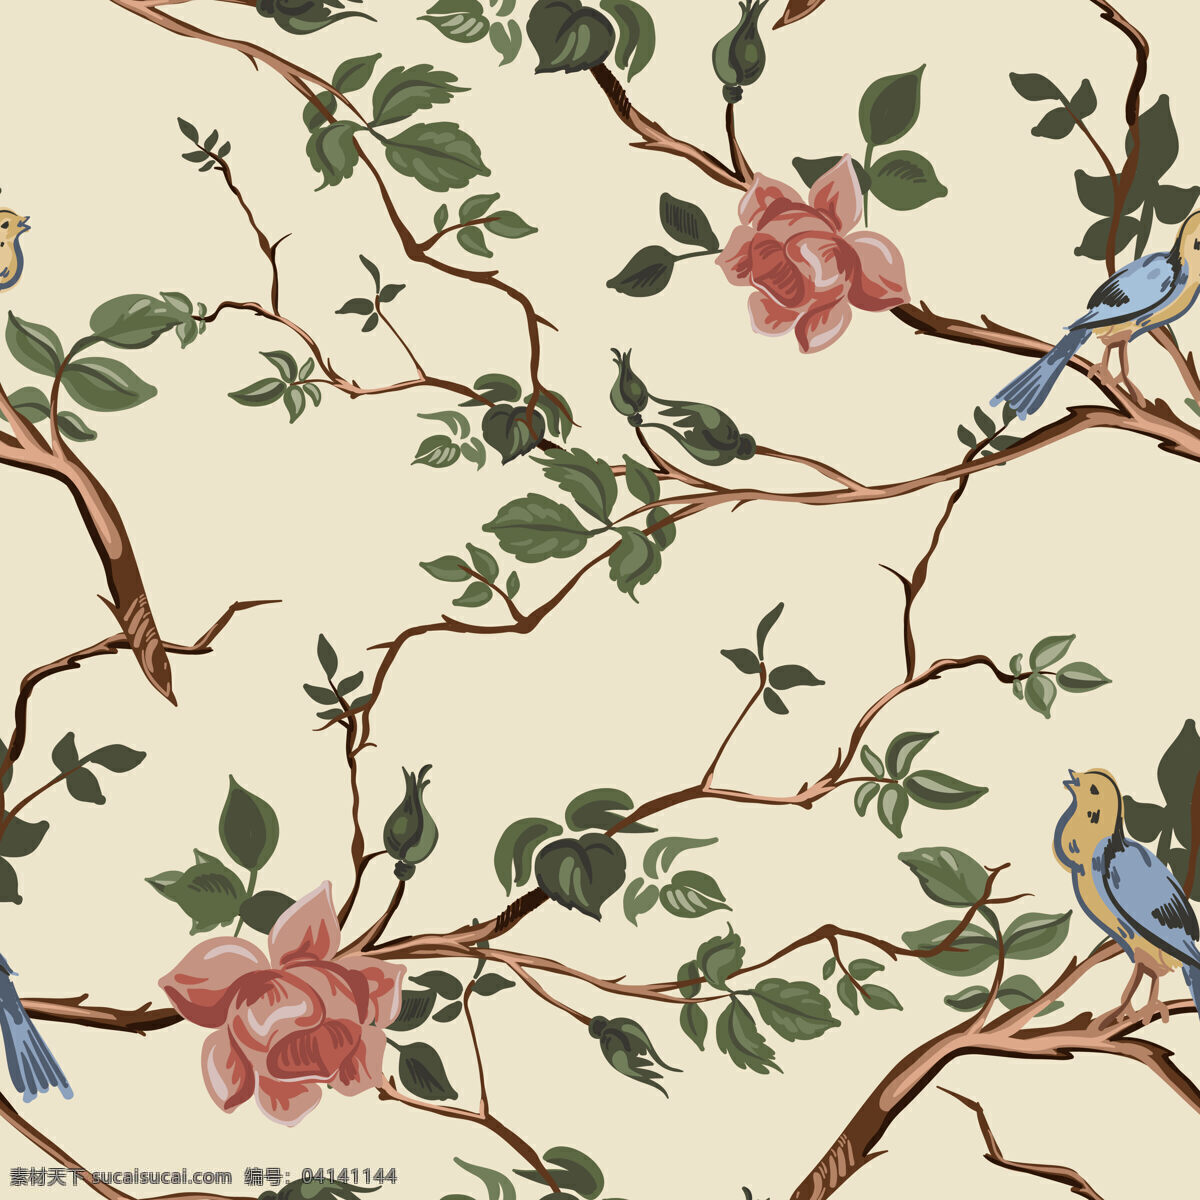 素雅 高级 树枝 壁纸 图案 装饰设计 肉色底色 壁纸图案 褐色树枝 蓝色小鸟